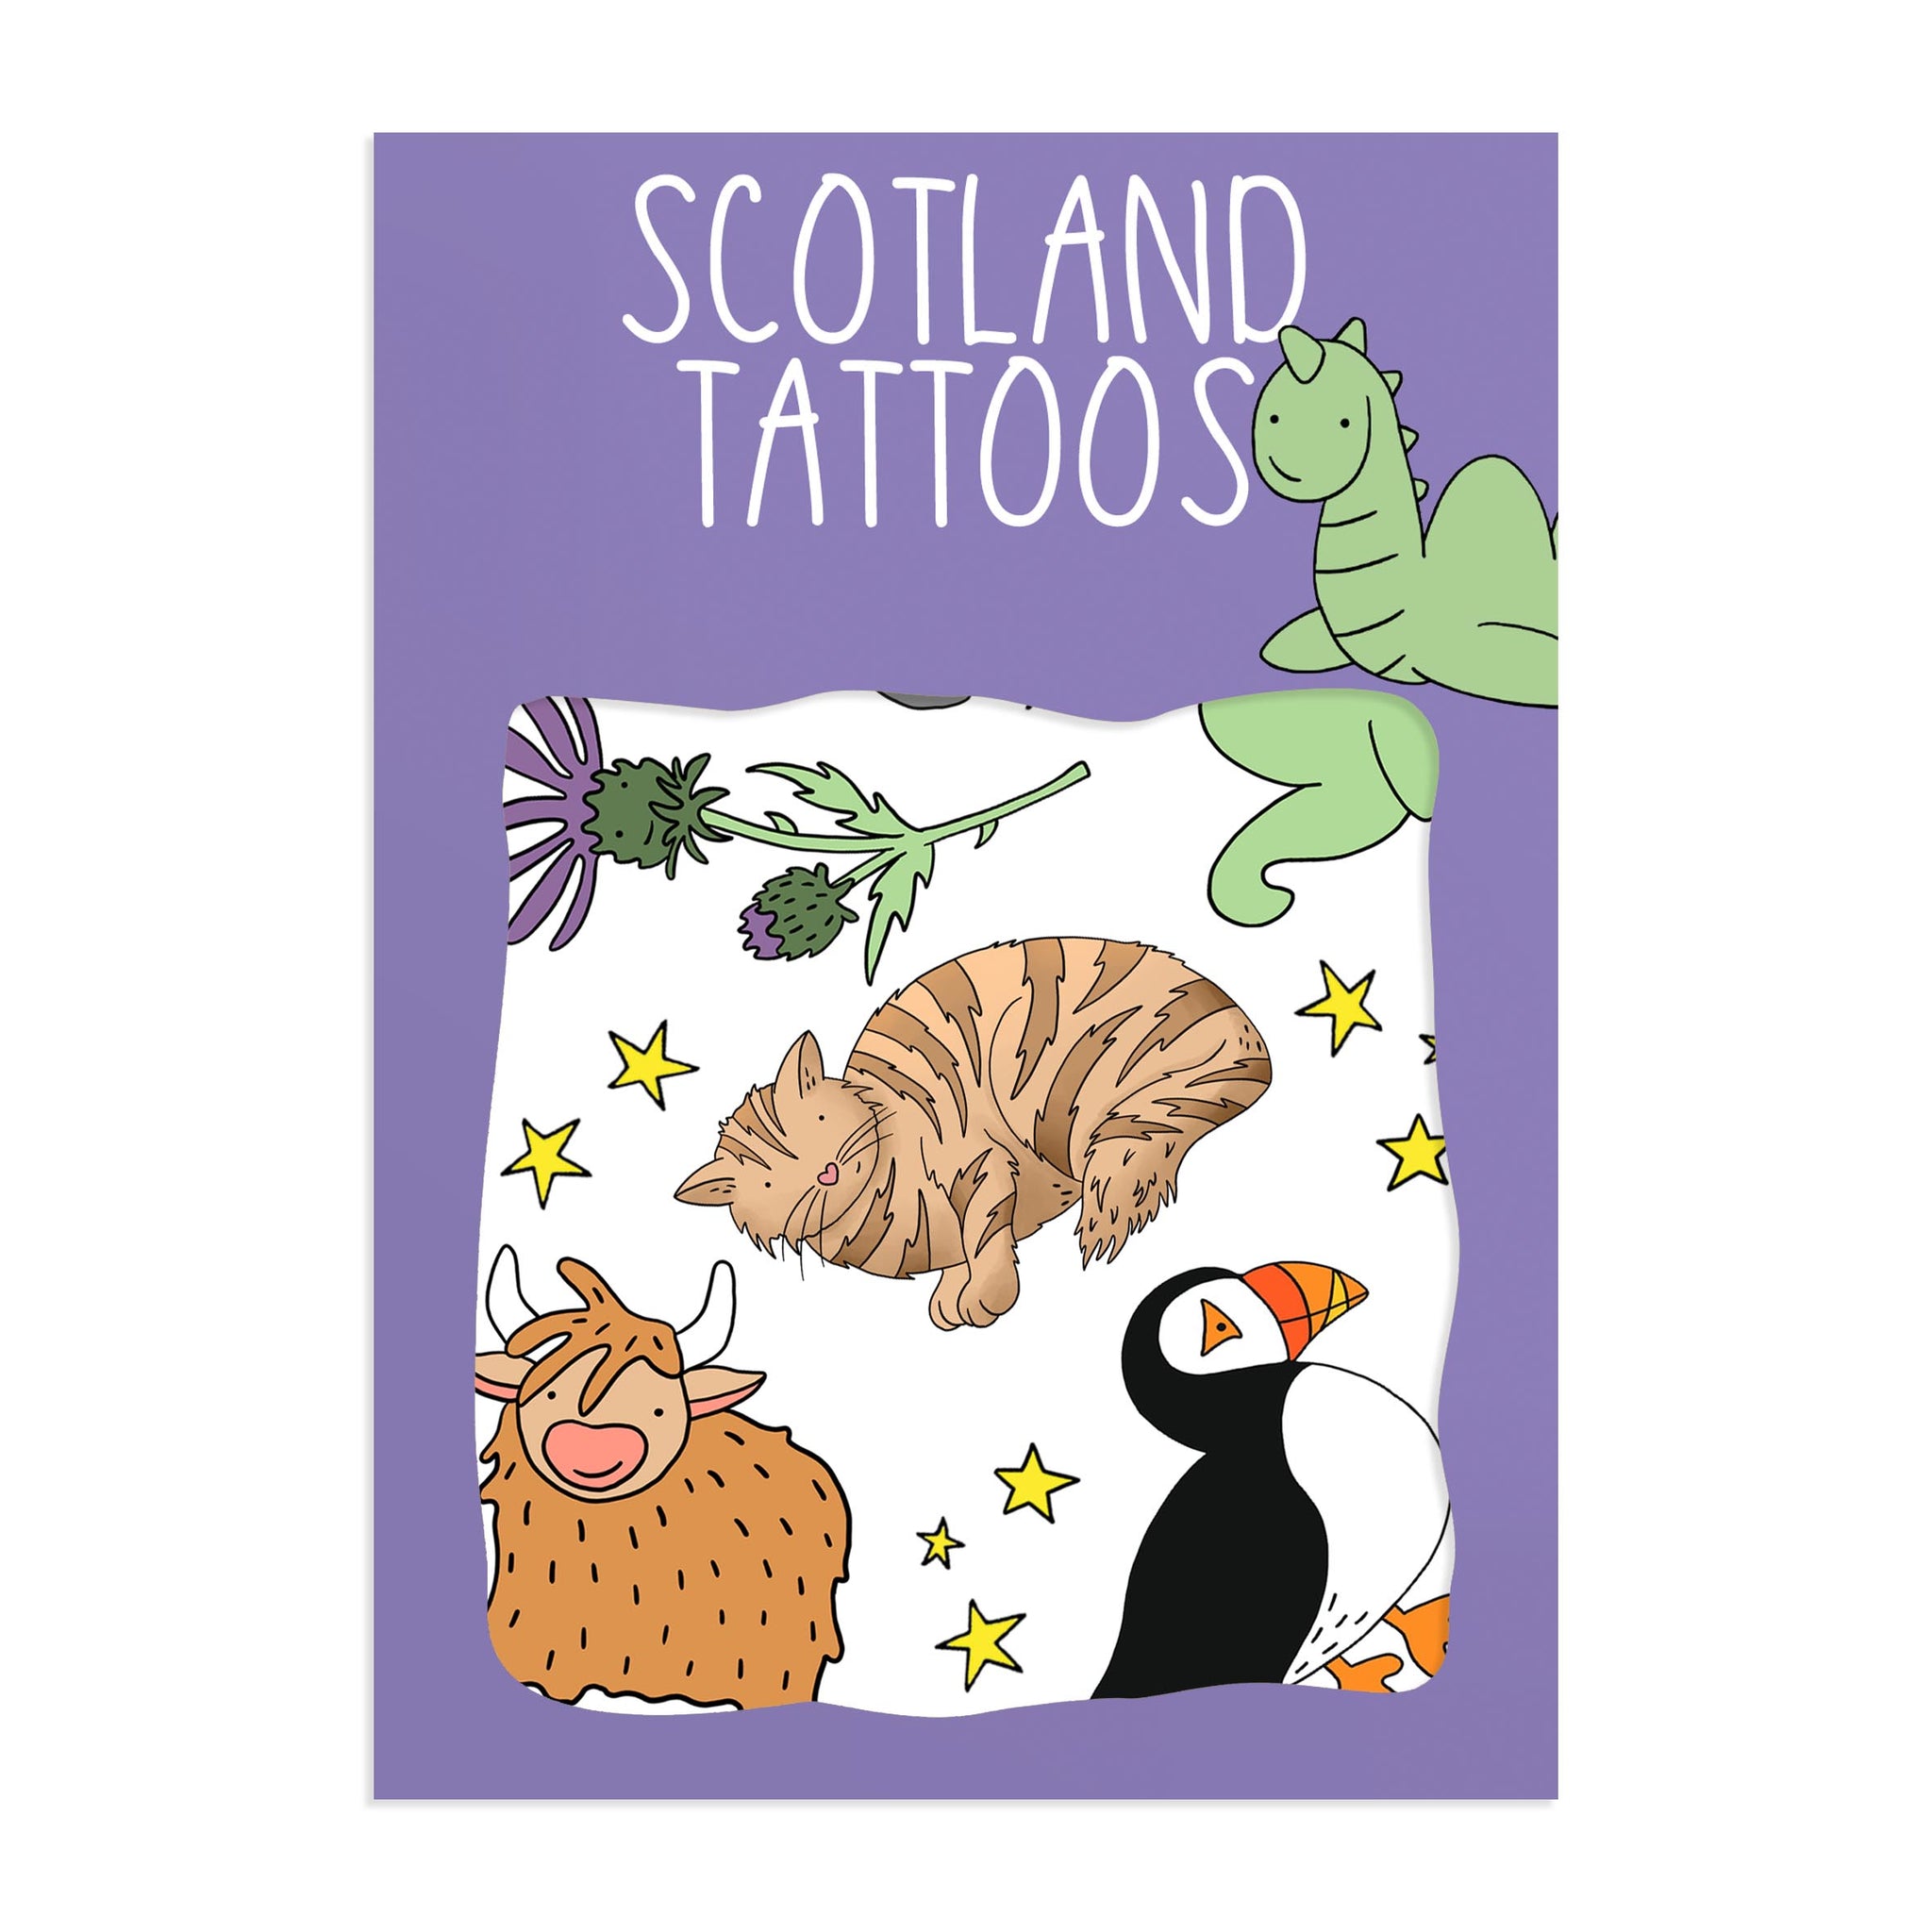 Scotland Transfer Tattoos